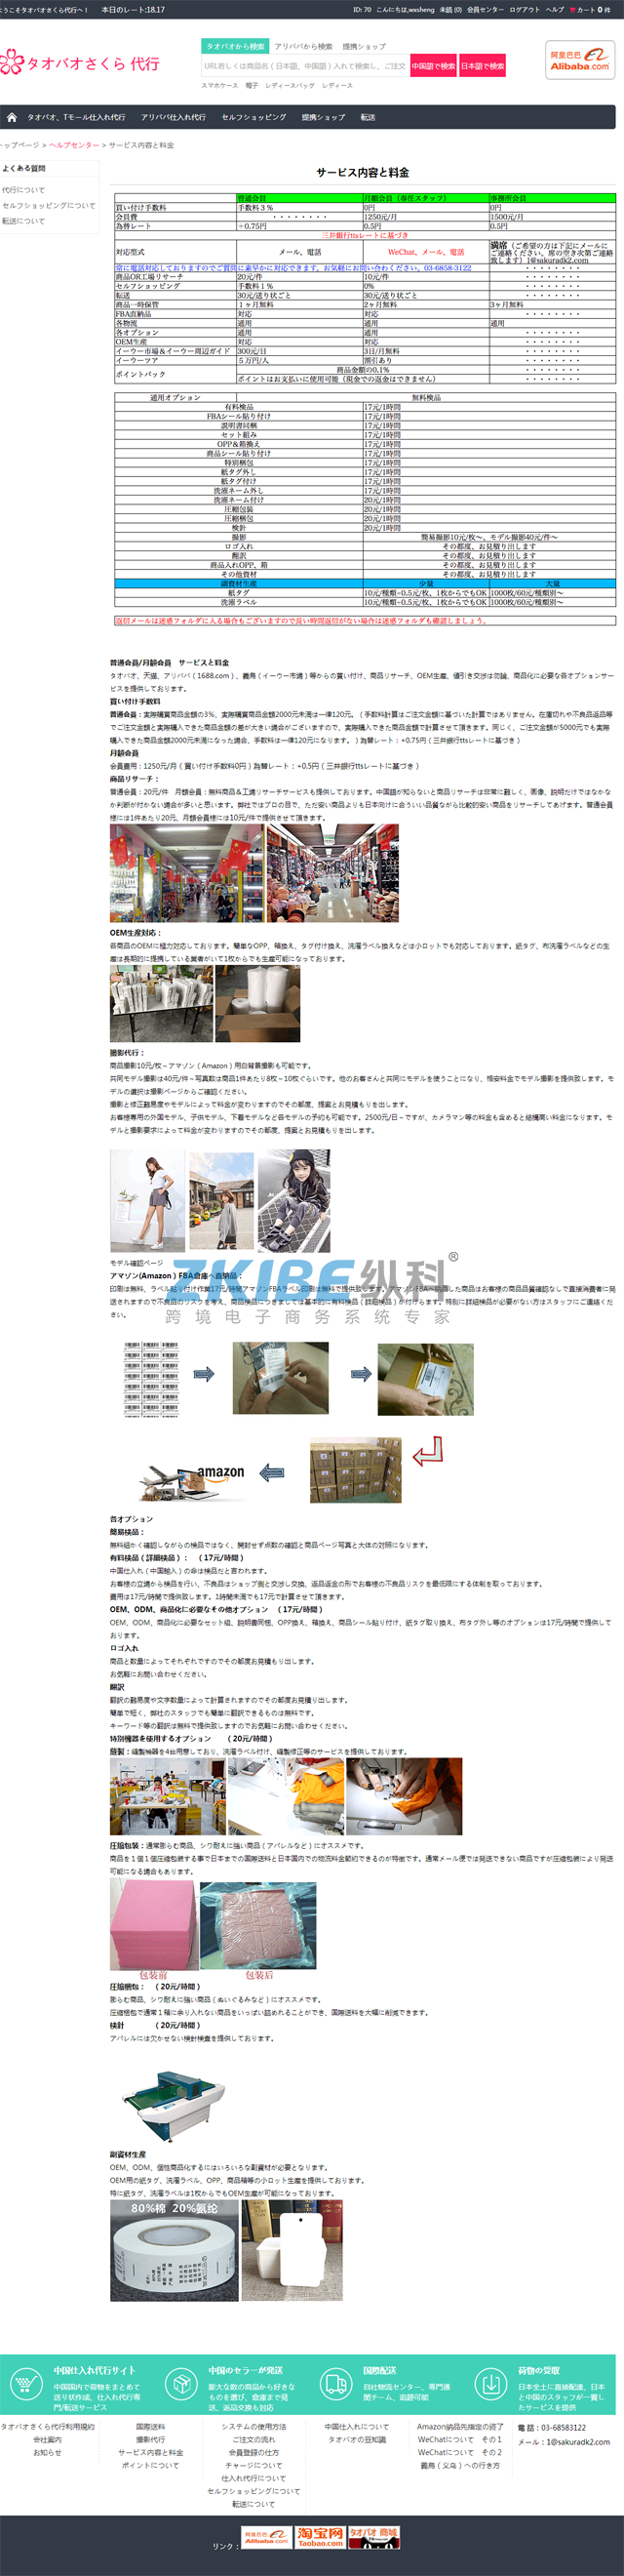 日本淘宝代购系统-服务内容和价格页面